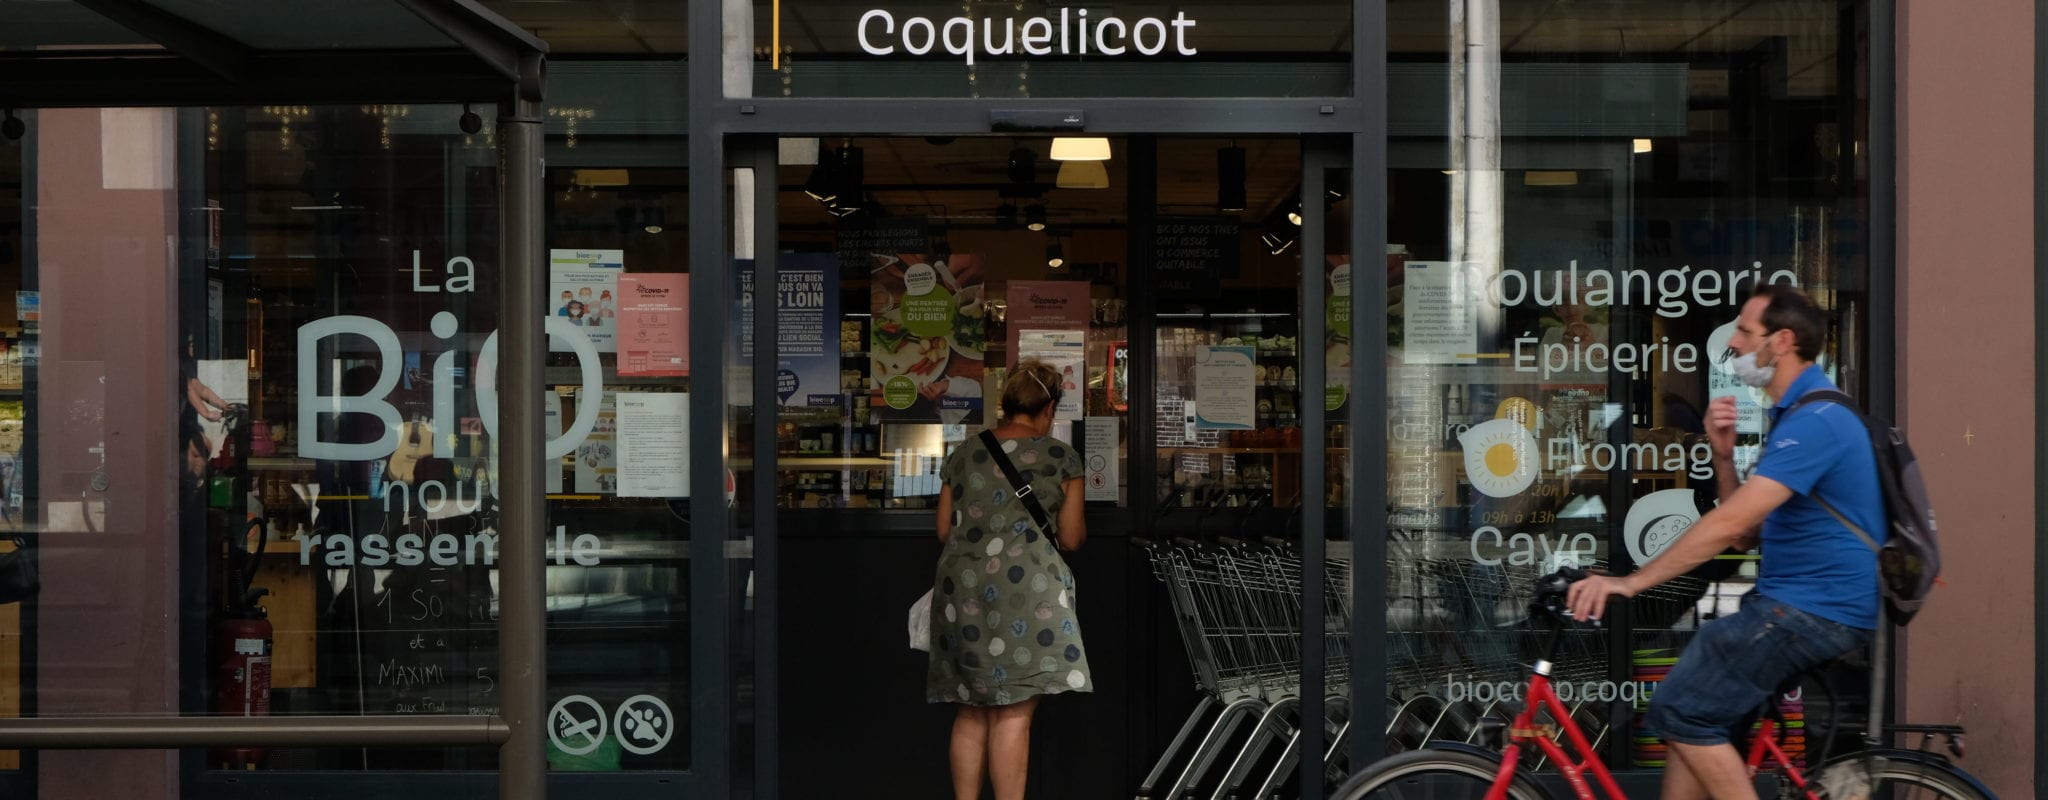 Chez Biocoop Coquelicot, produits équitables, management capitaliste